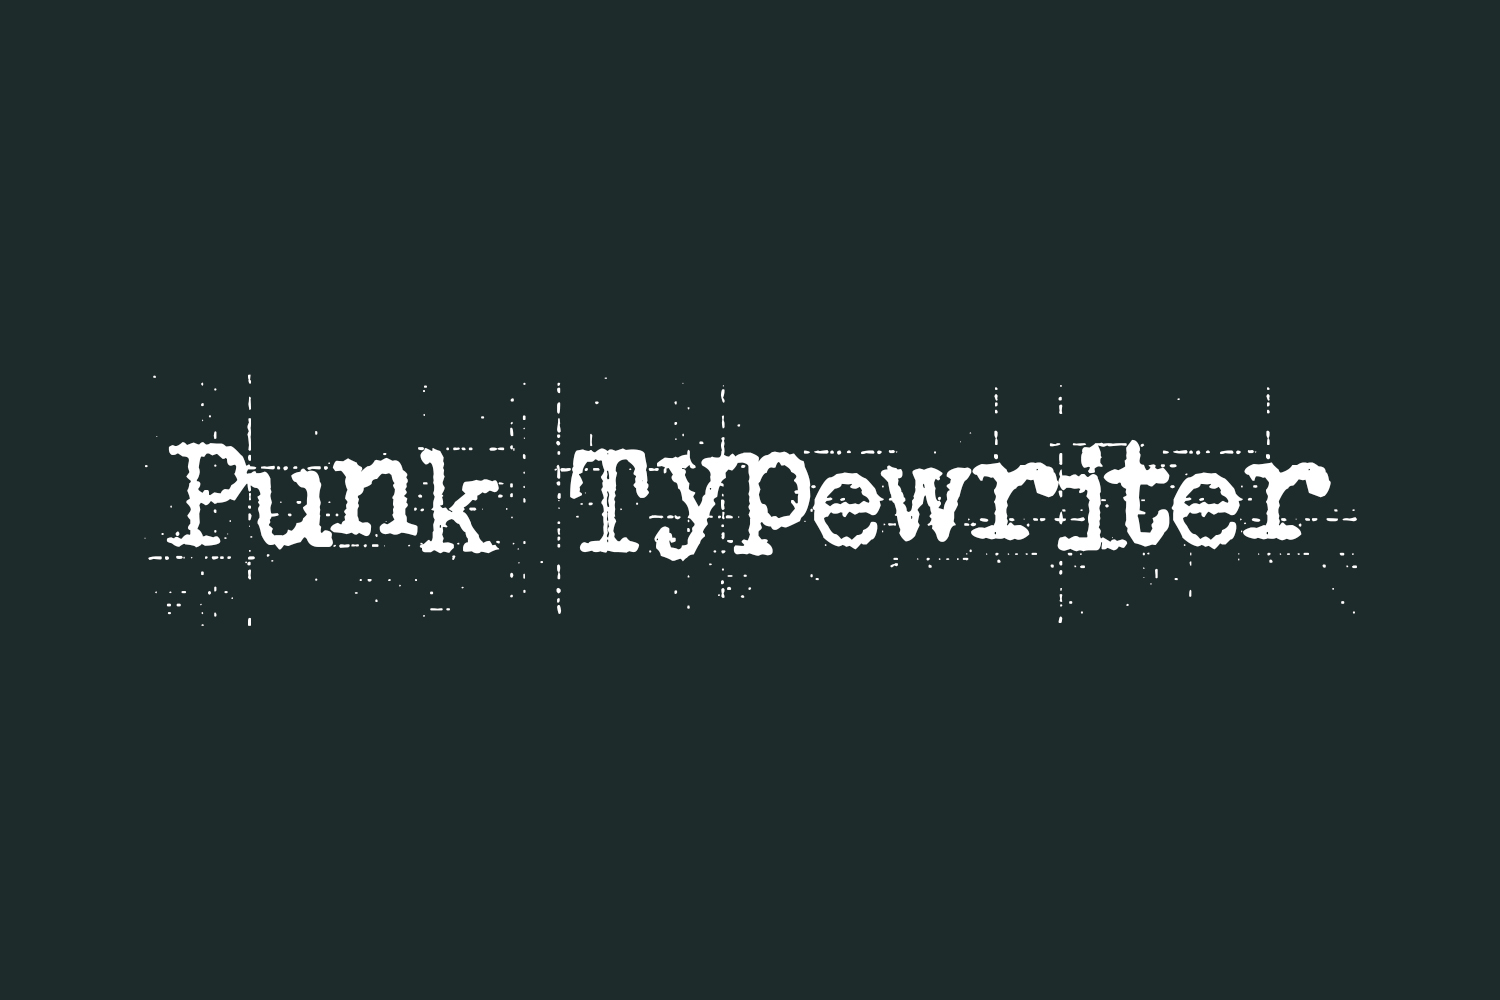 Punk Typewriter Free Font